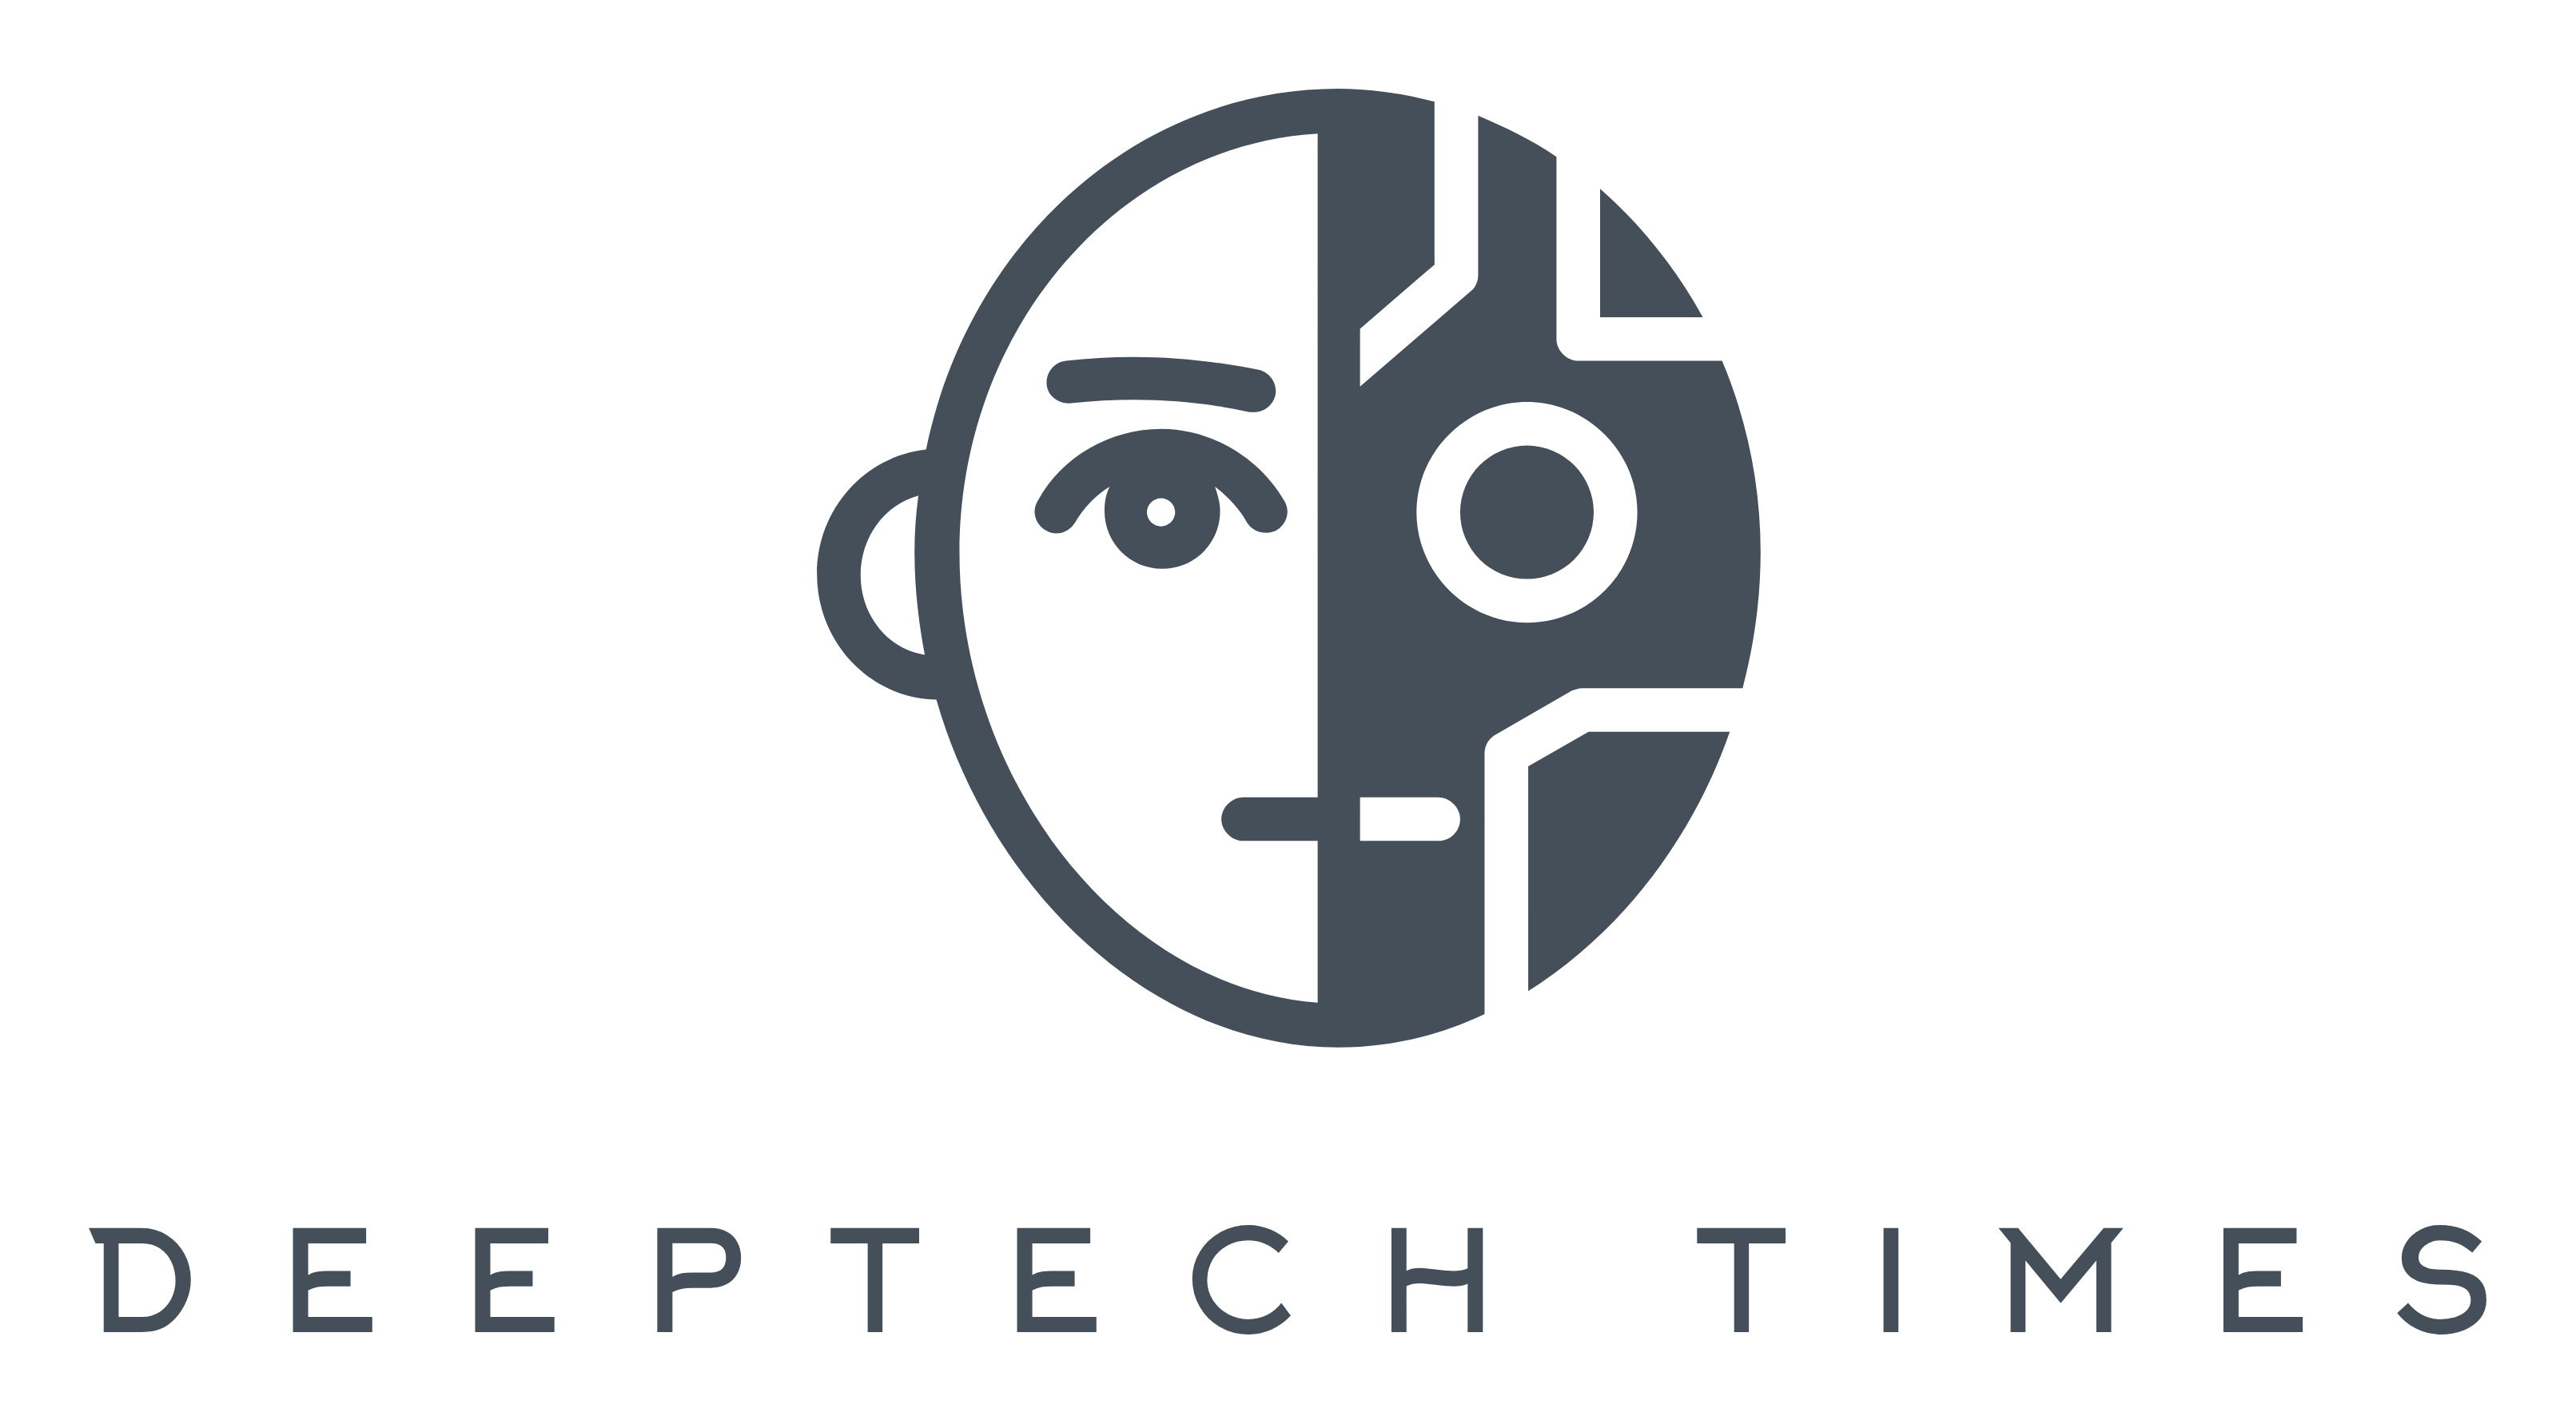 deeptech_logo.png